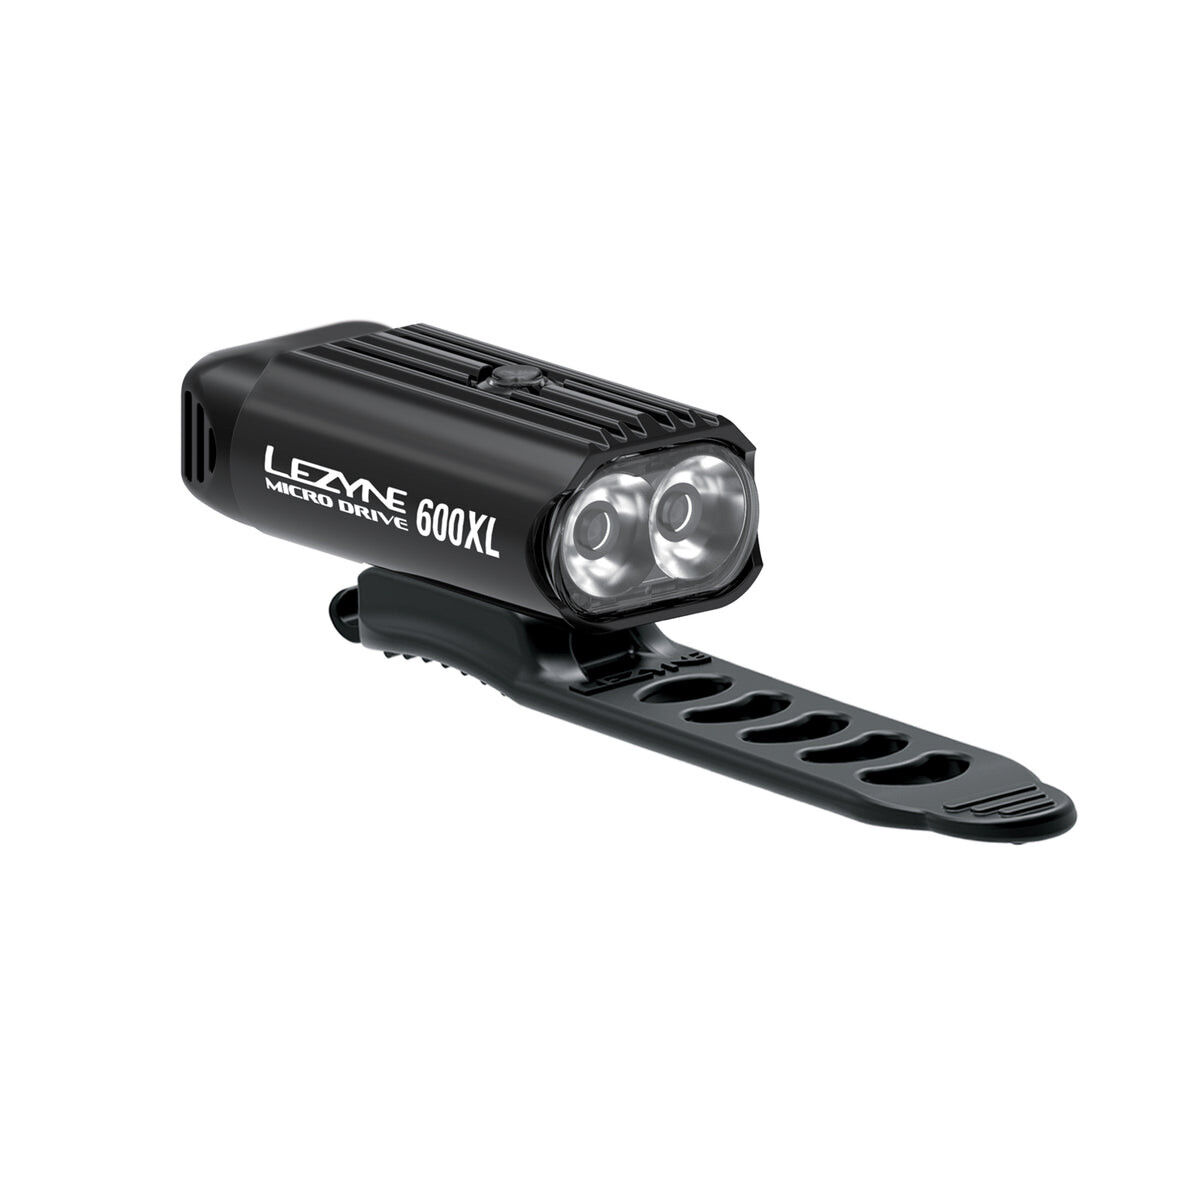 Lezyne Micro Drive 600XL - Cykelbelysningssæt | Hardloop